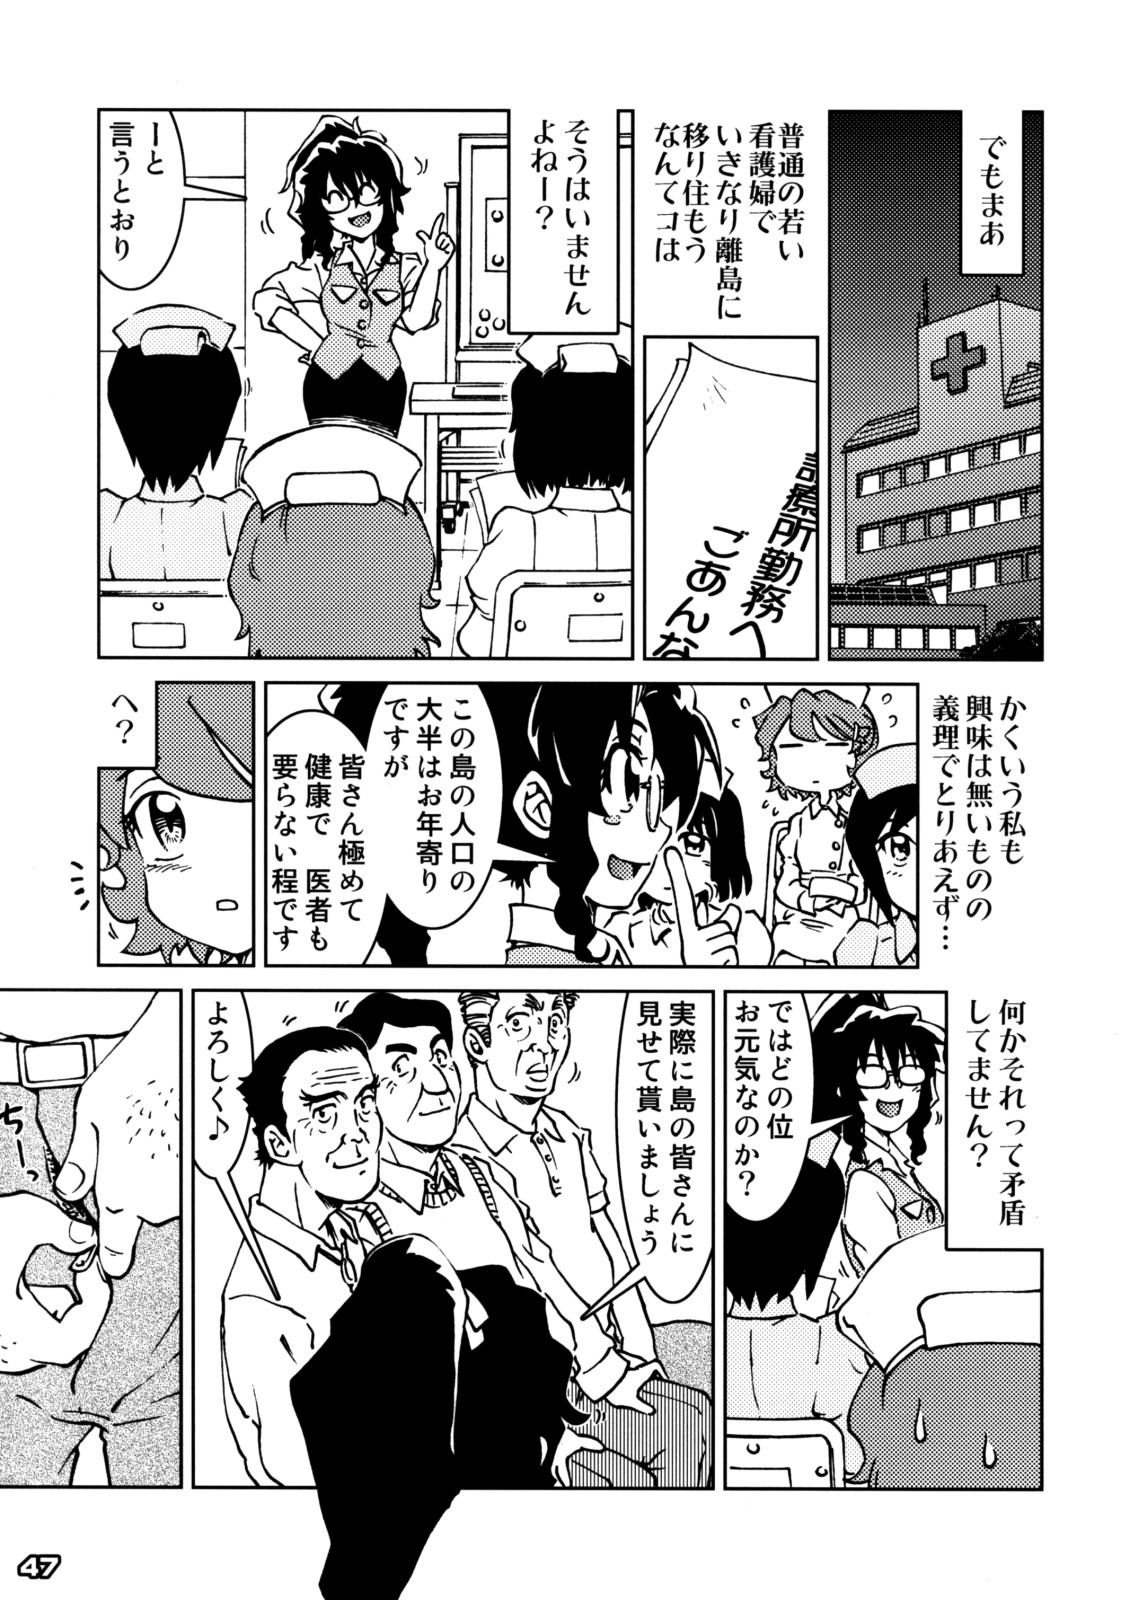 [Kabushikigaisha Messe Sanoh] Sanatorium -Tokushu Byoutou- page 46 full